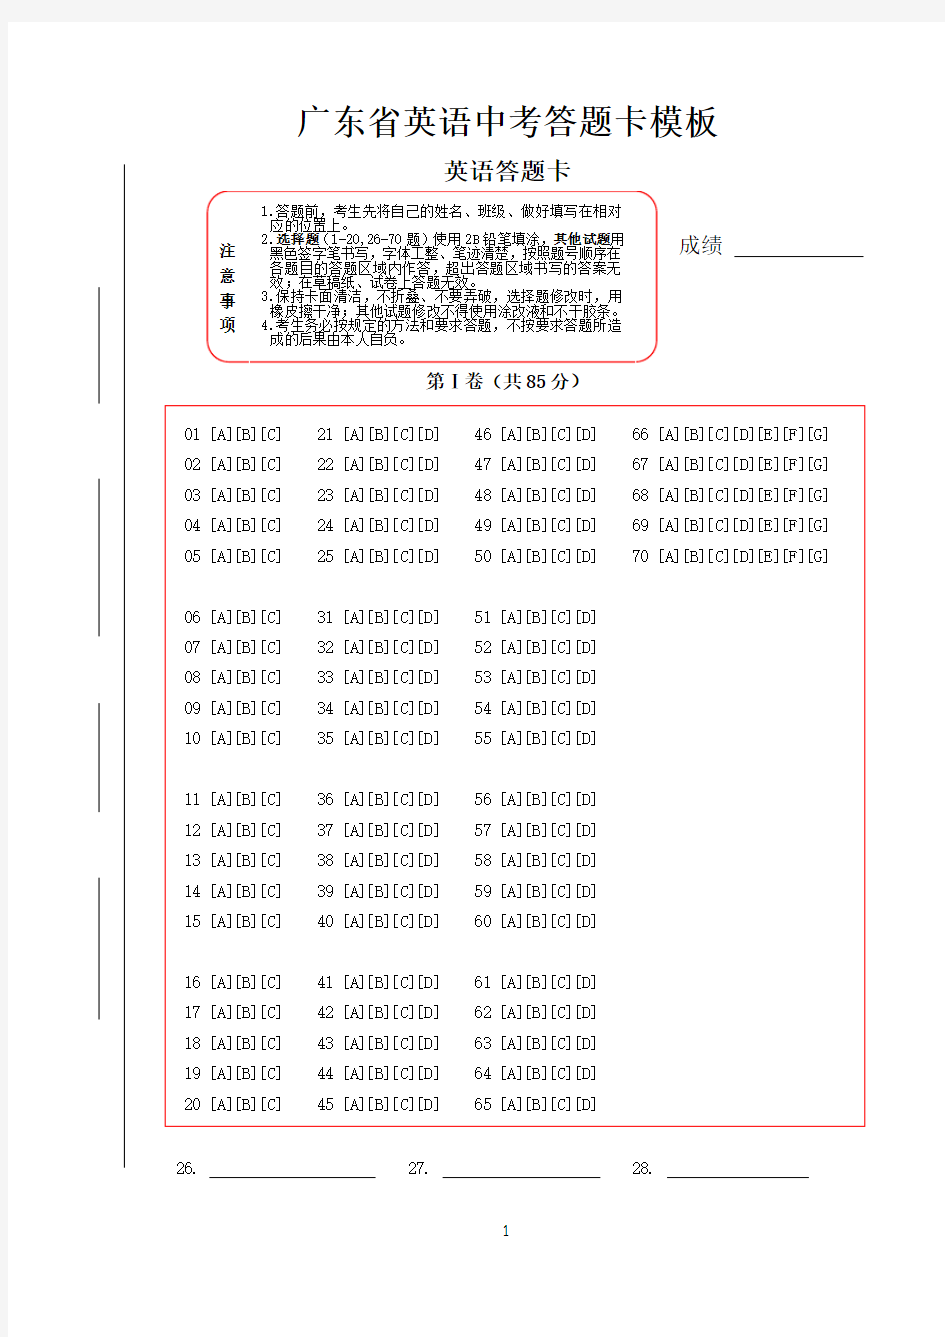 广东省中考英语答题卡模板(新版)